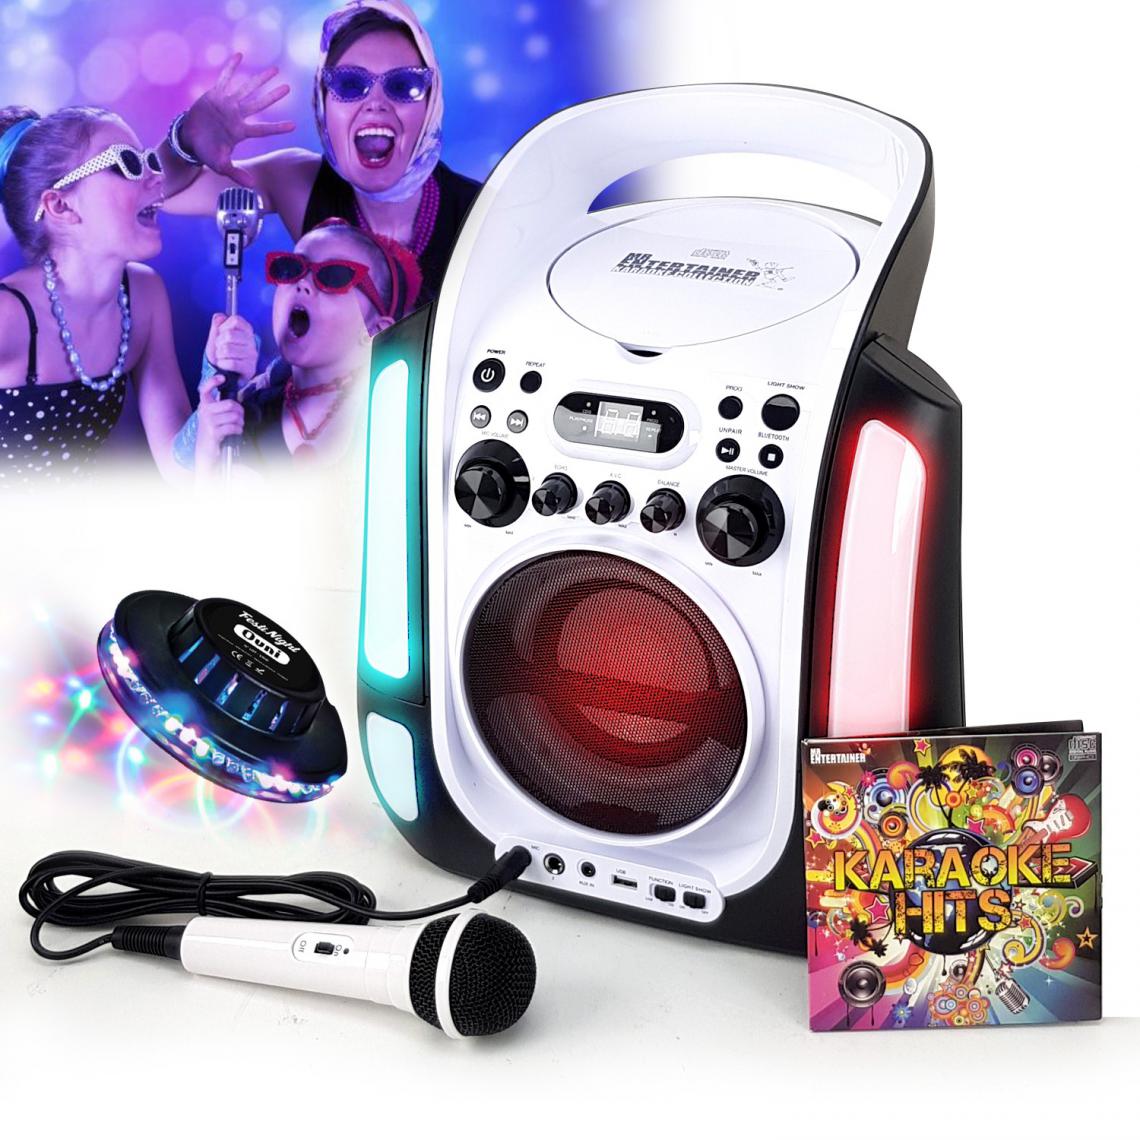 Itpms - Enceinte Lecteur Party Karaoké Enfant LED USB Bluetooth Echo réglable + Microphone + CD Audio - 12H d'autonomie + Lumière OVNI - Enceintes Hifi